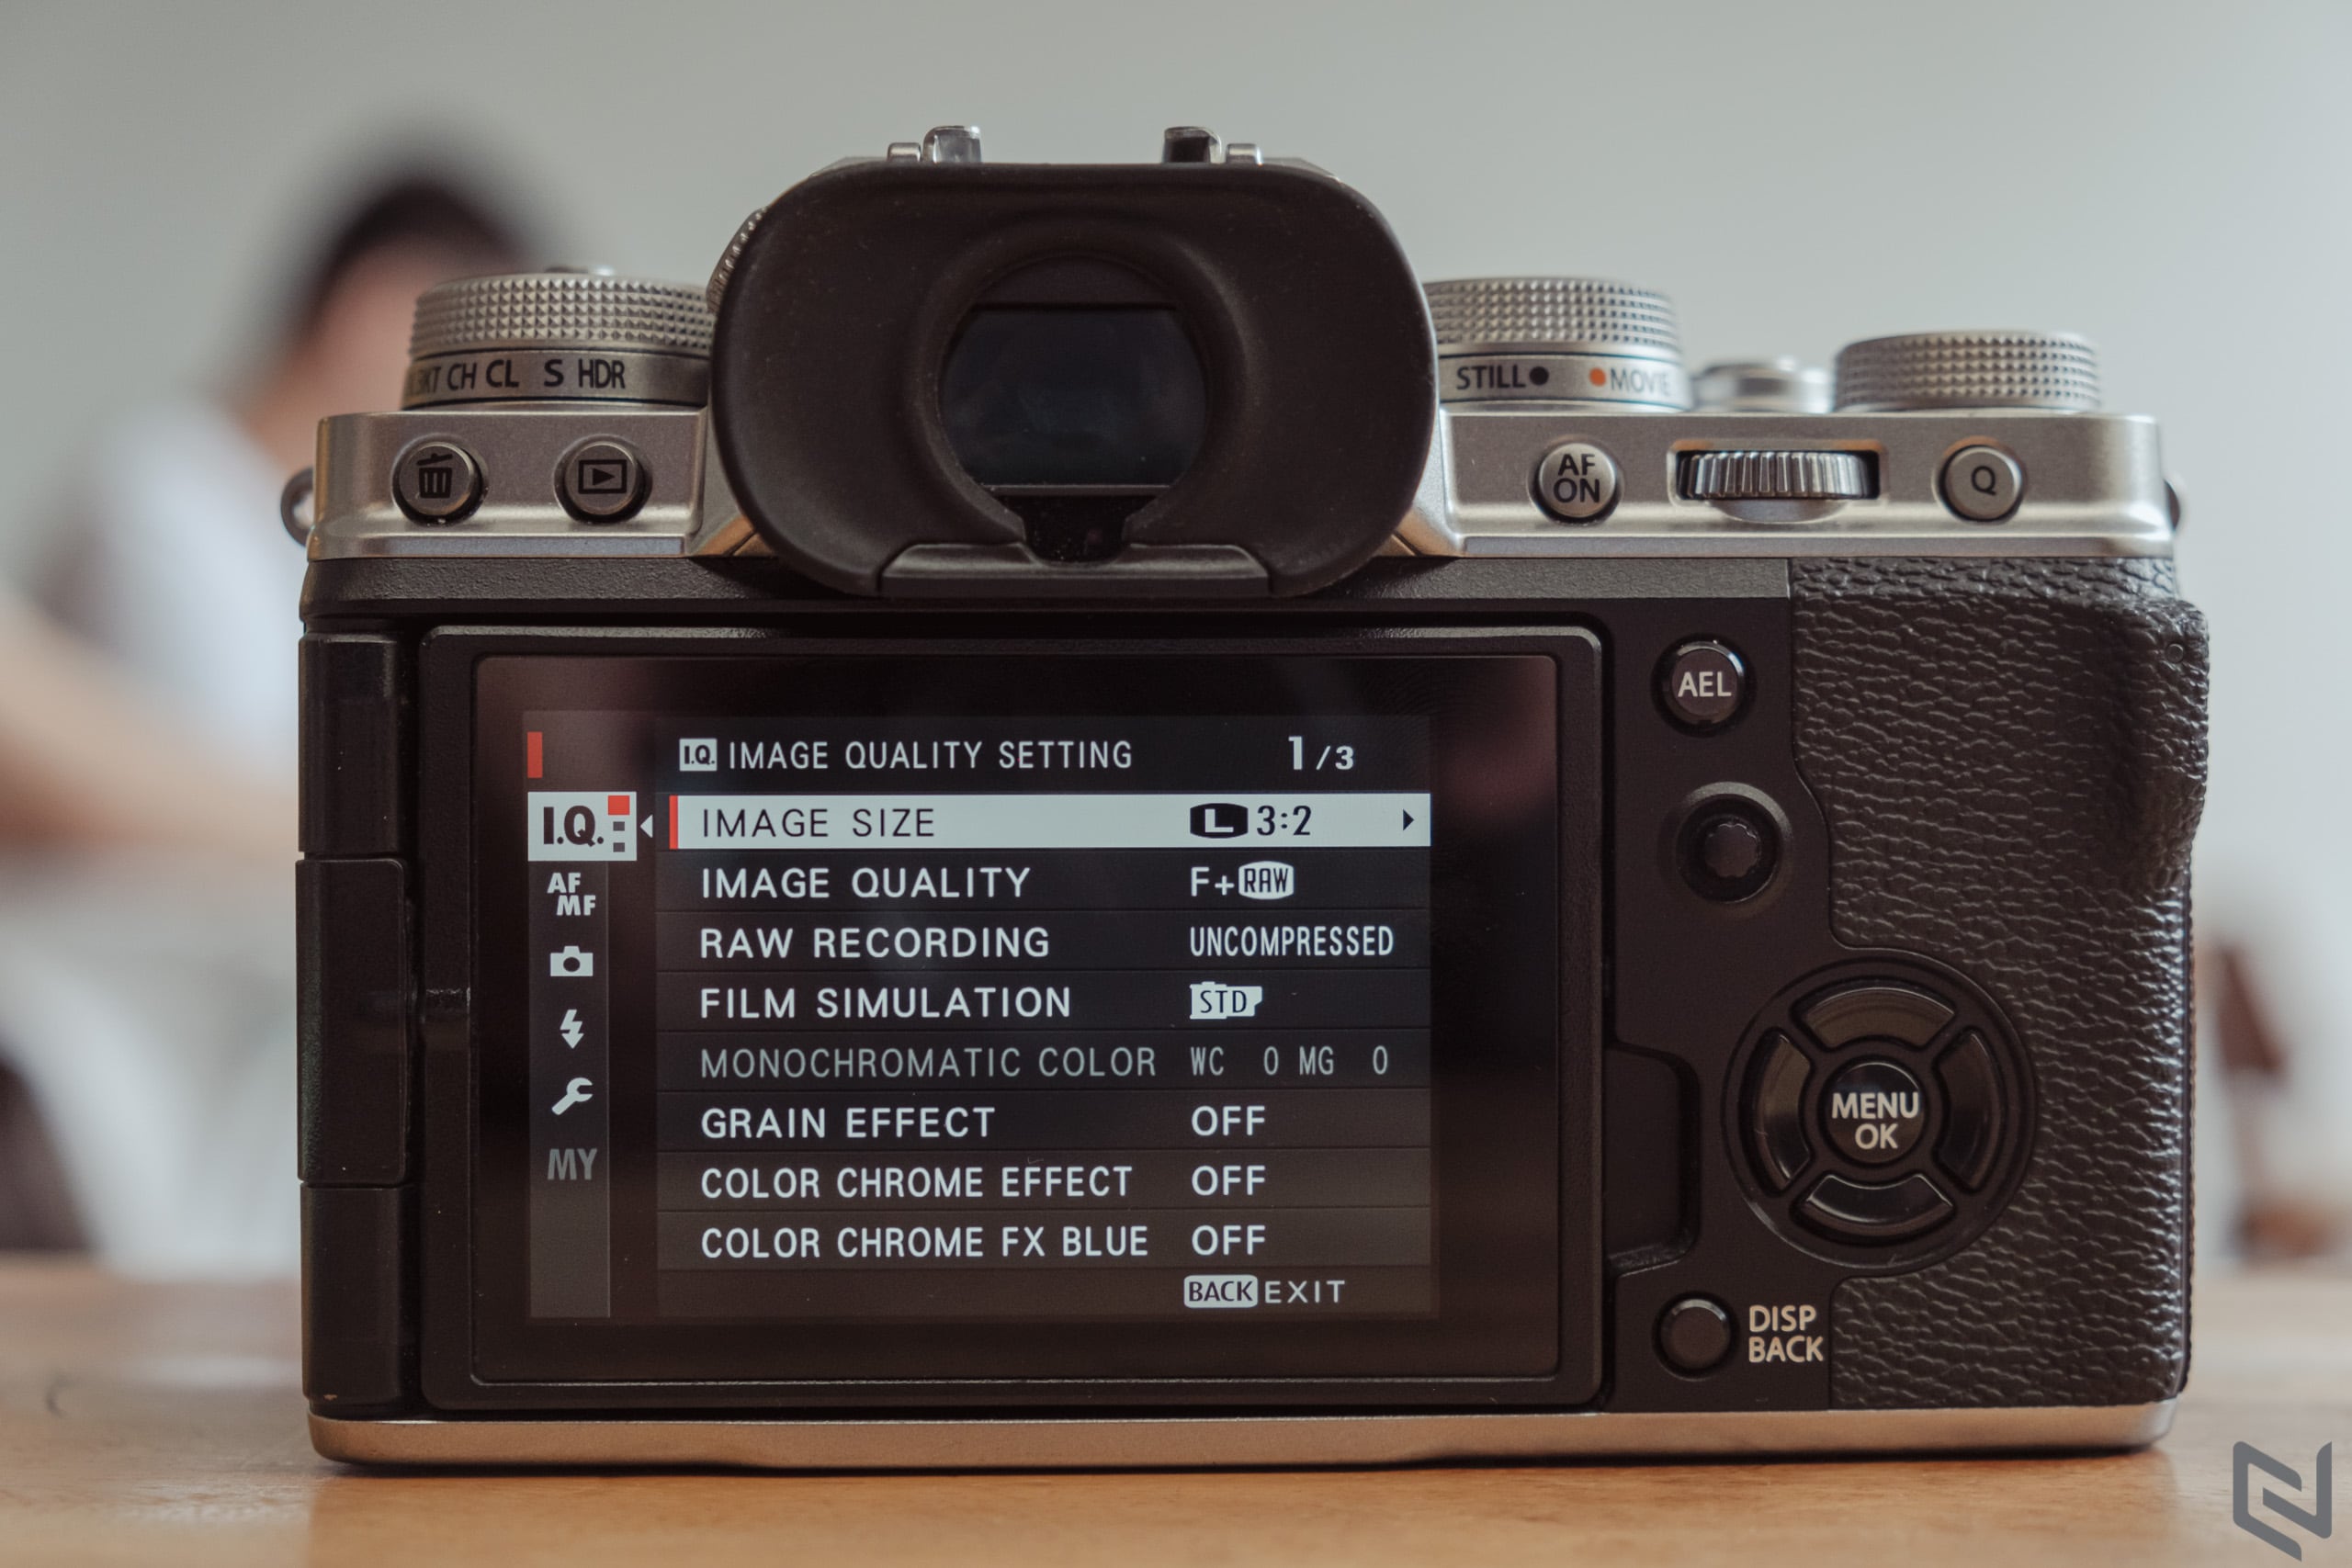 Trải nghiệm Fujifilm X-T4: màn hình xoay lật tiện lợi, chất ảnh vẫn xứng tầm flagship